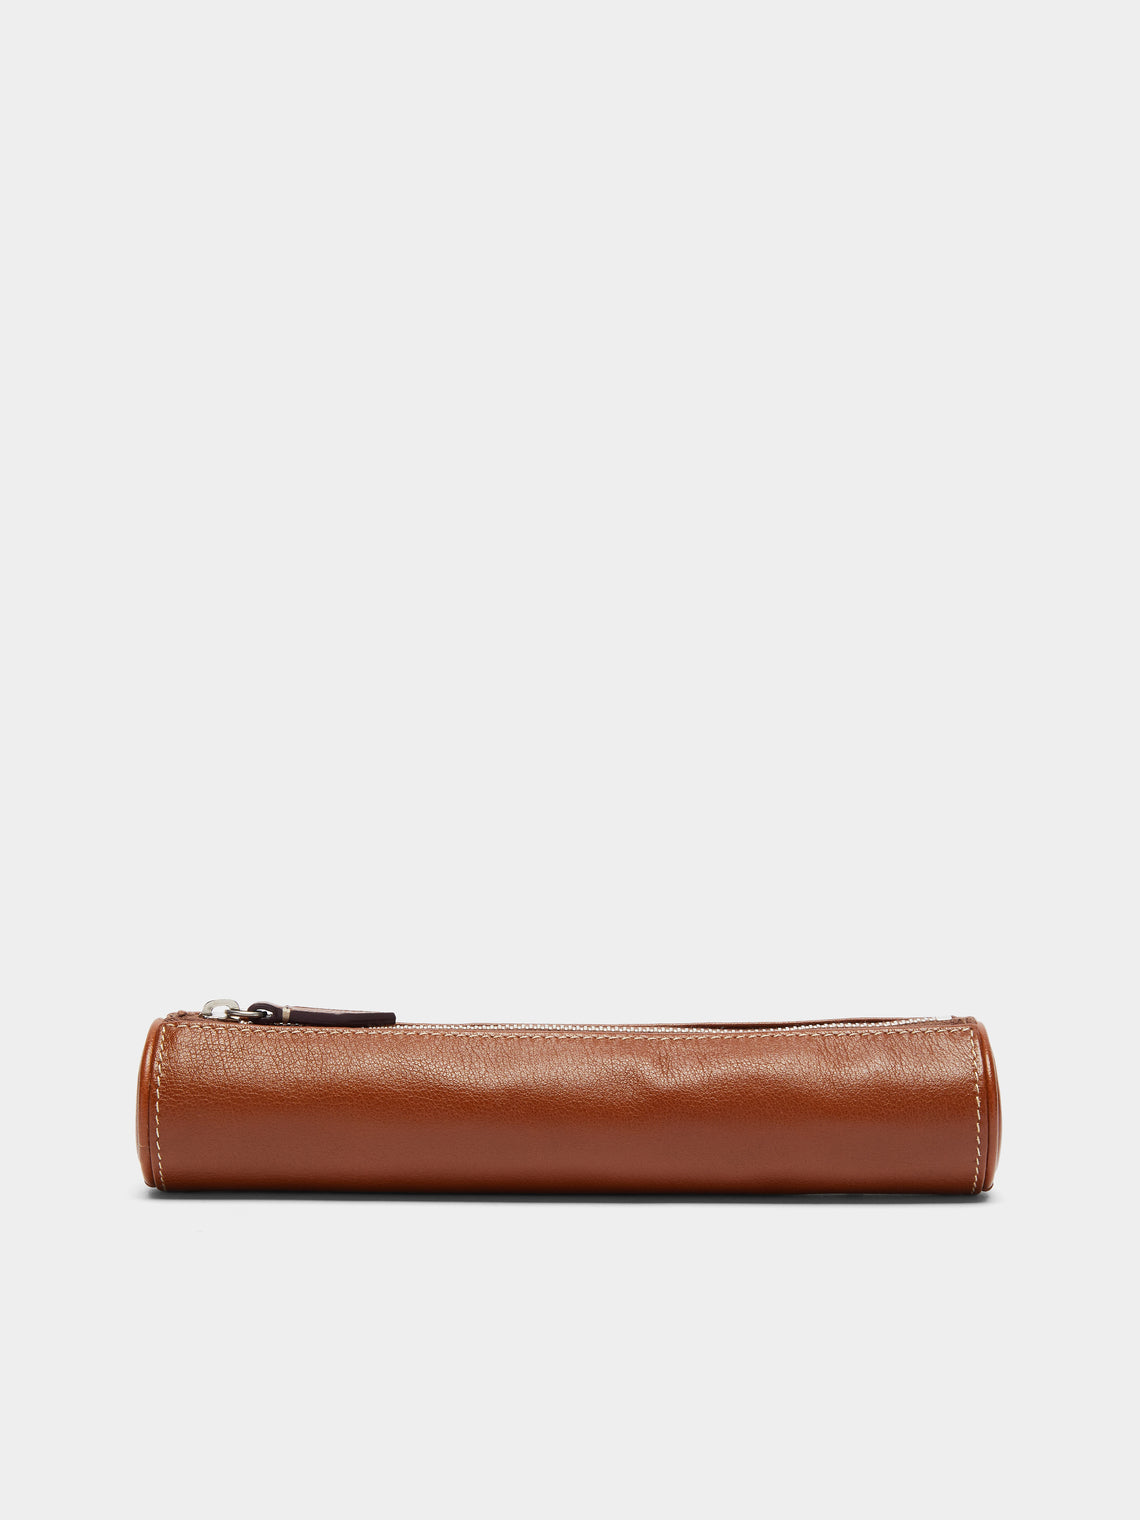 Métier - Leather Pencil Case - Brown - ABASK